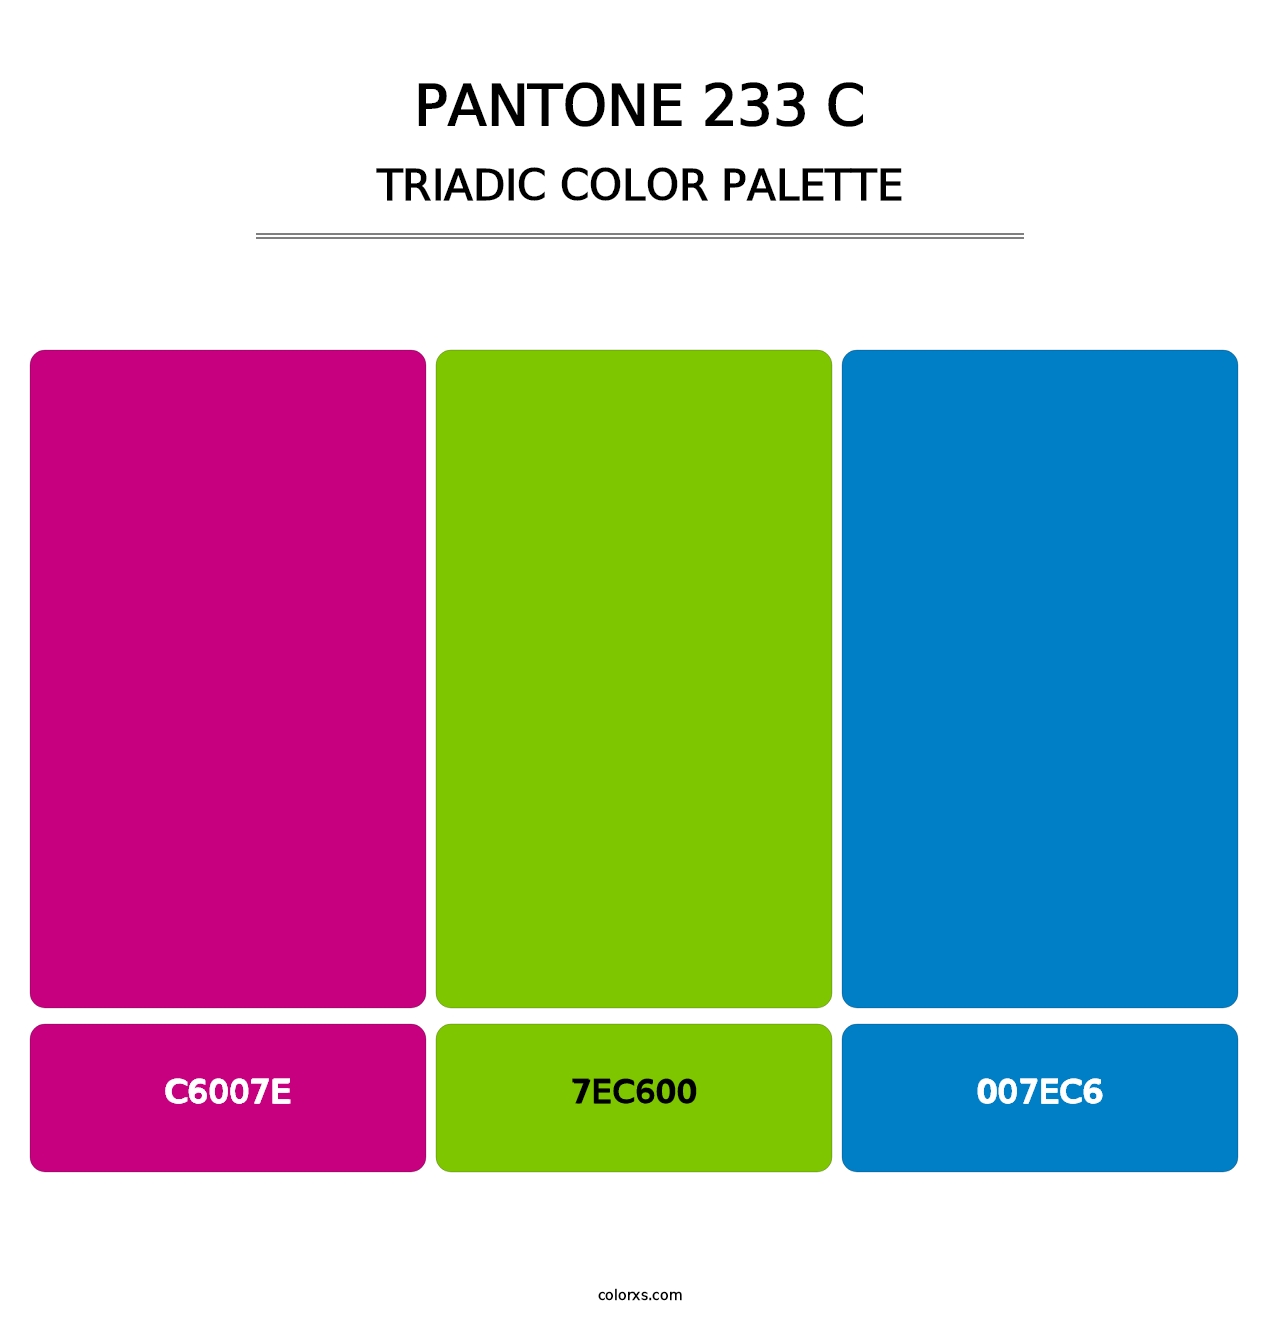 PANTONE 233 C - Triadic Color Palette